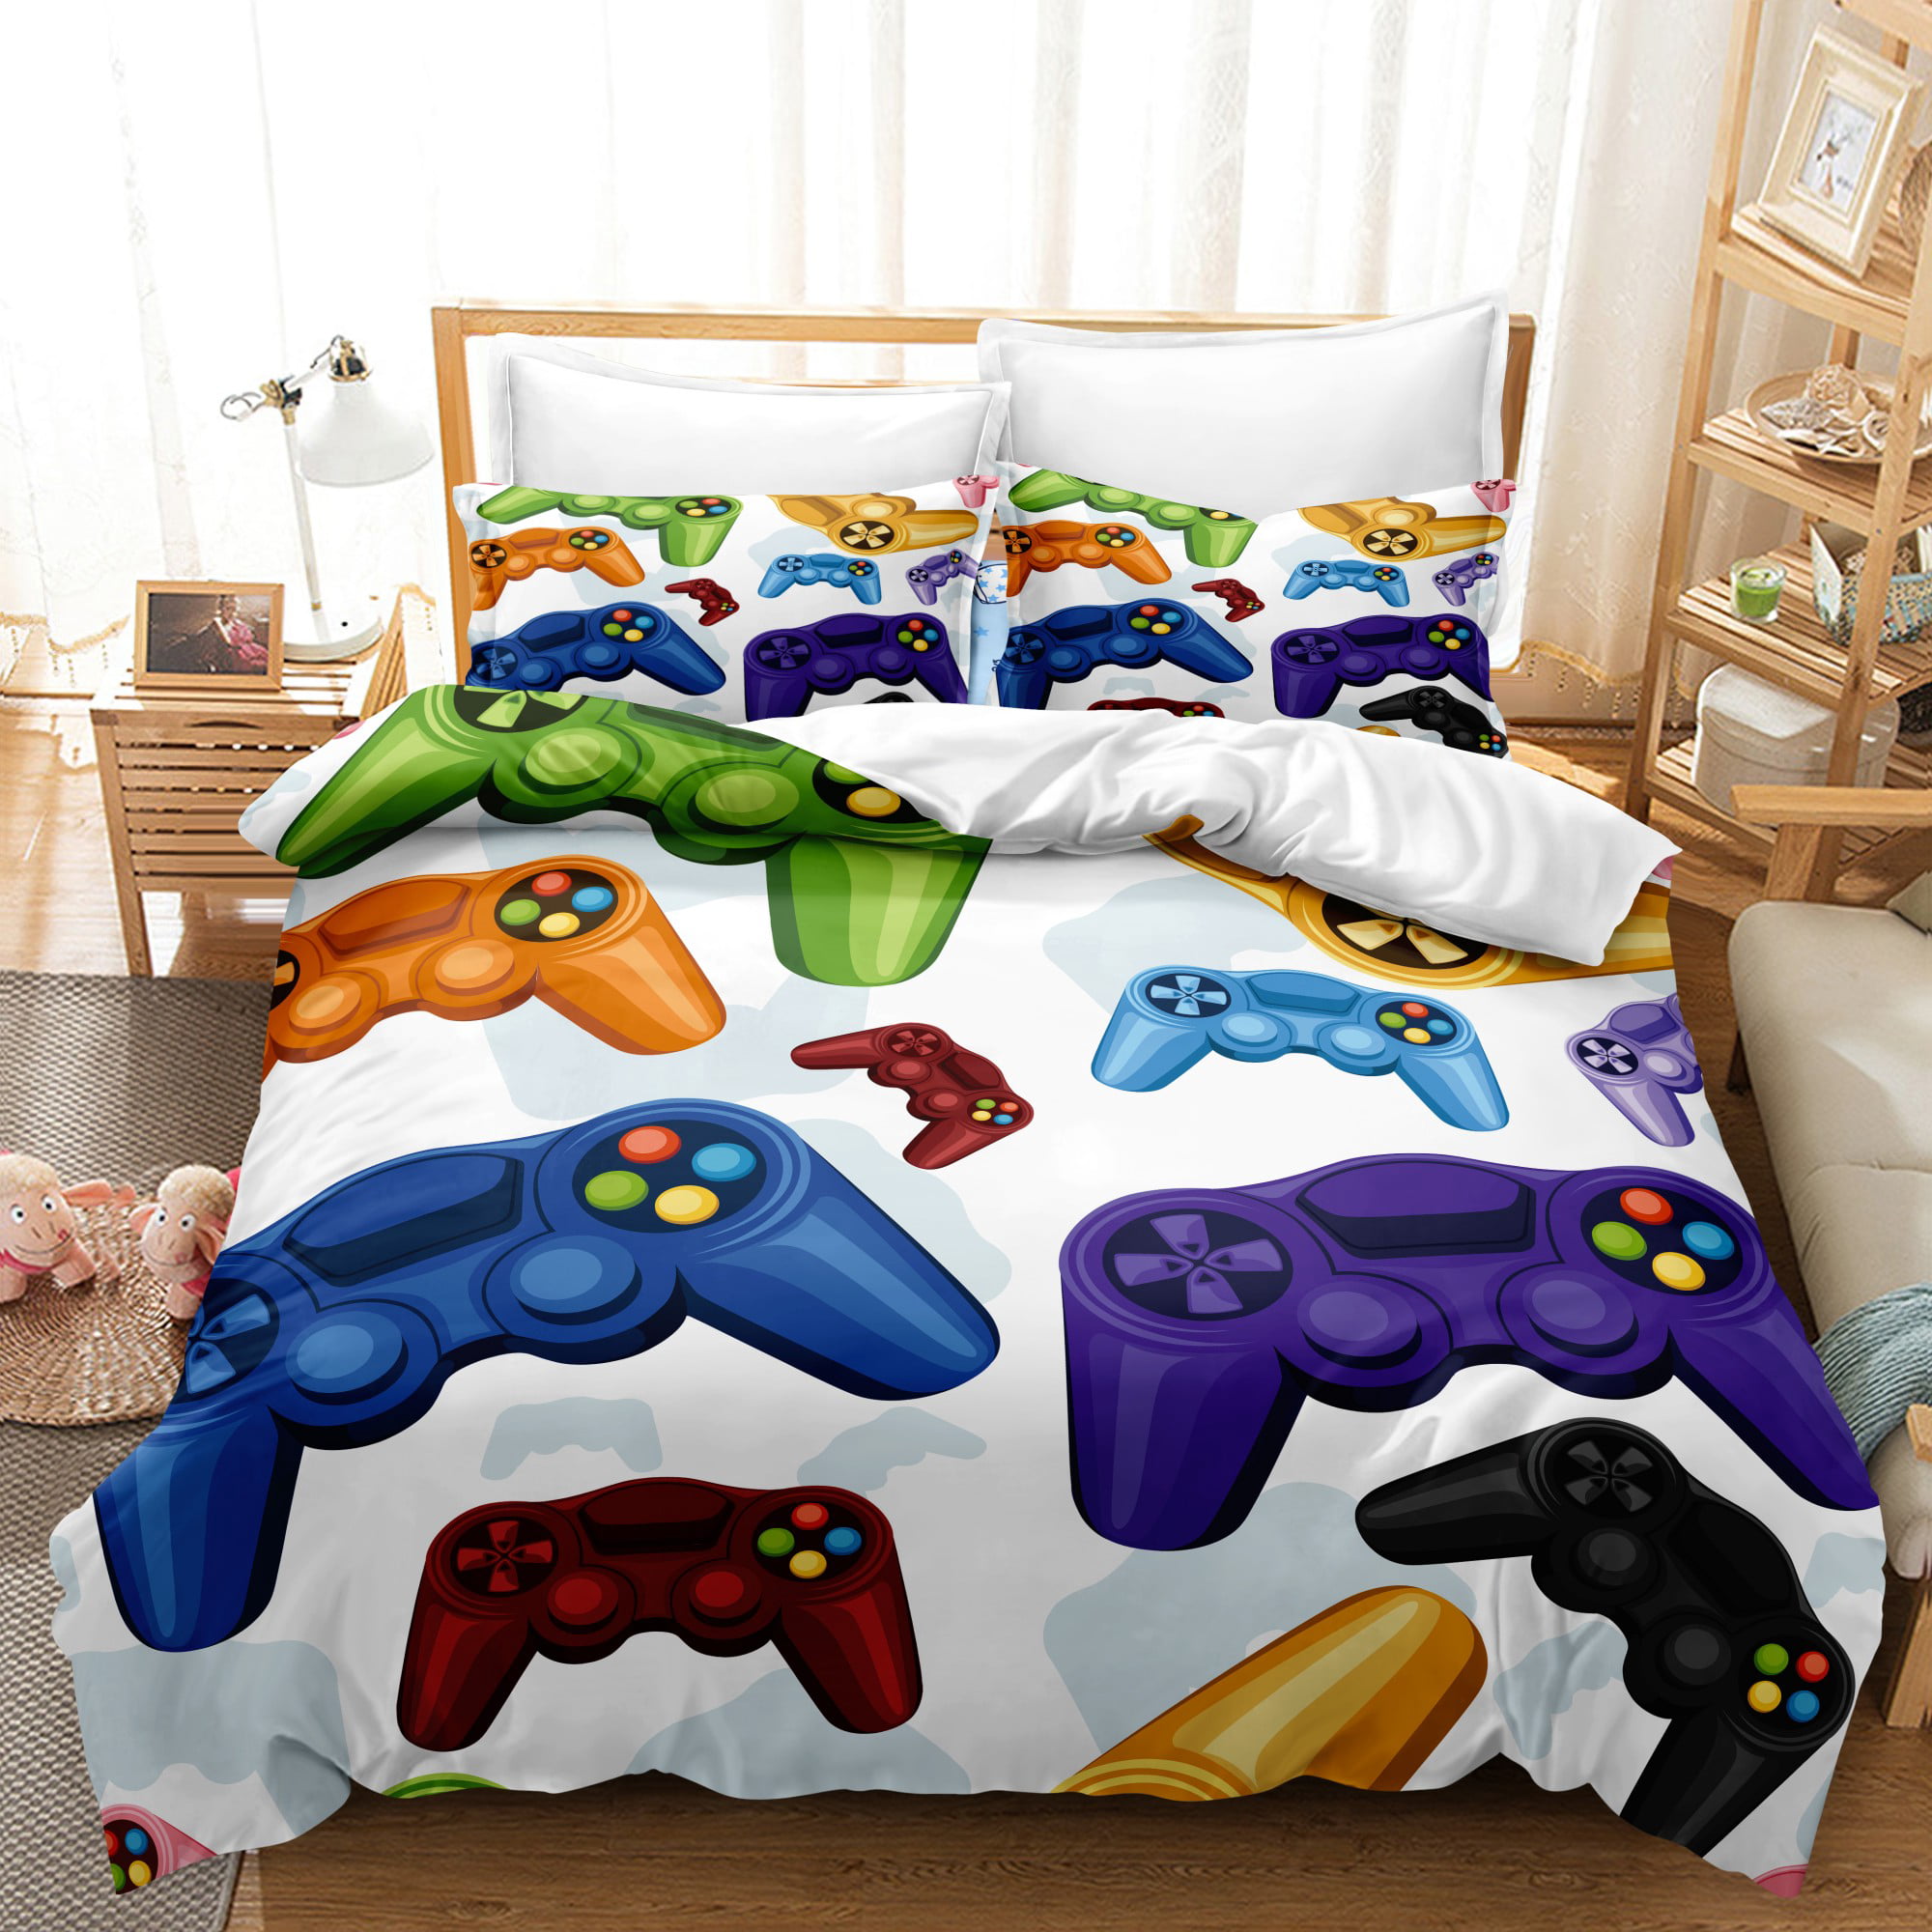 Gaming Bedding Sets Gamer Room Decor Game Playstation Comforter ...